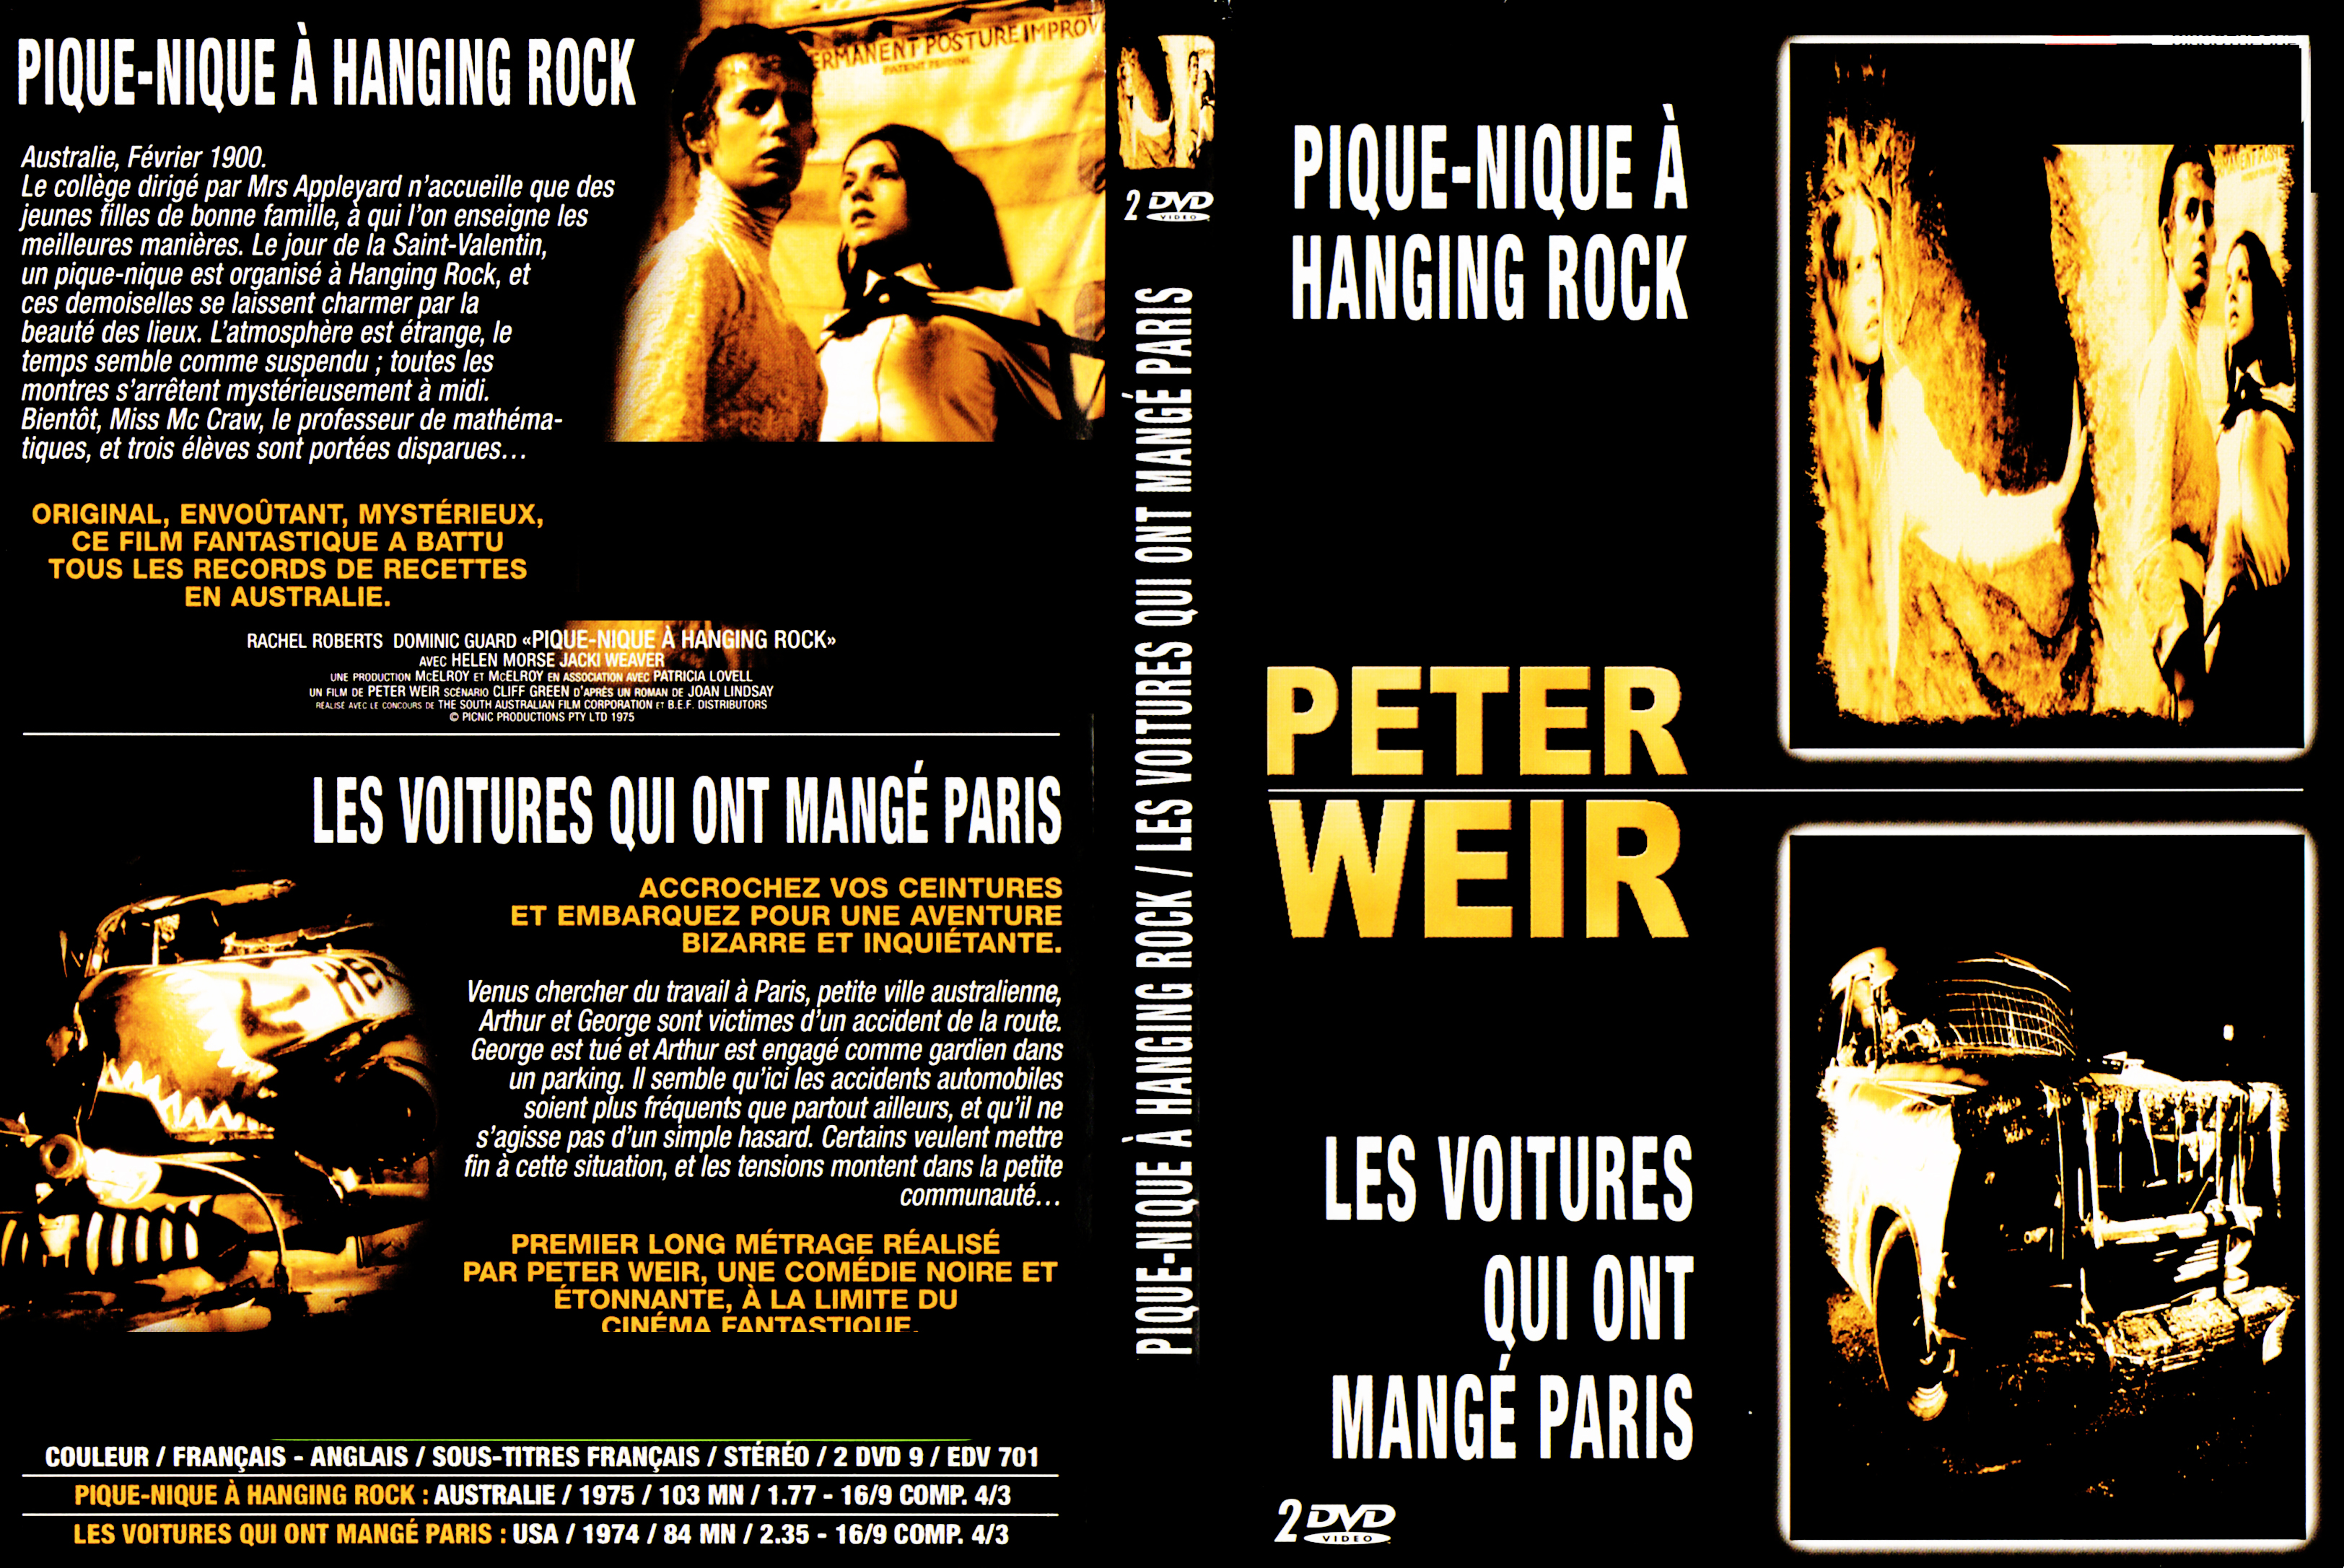 Jaquette DVD Pique-nique  Hanging Rock + Les voitures qui ont mang Paris